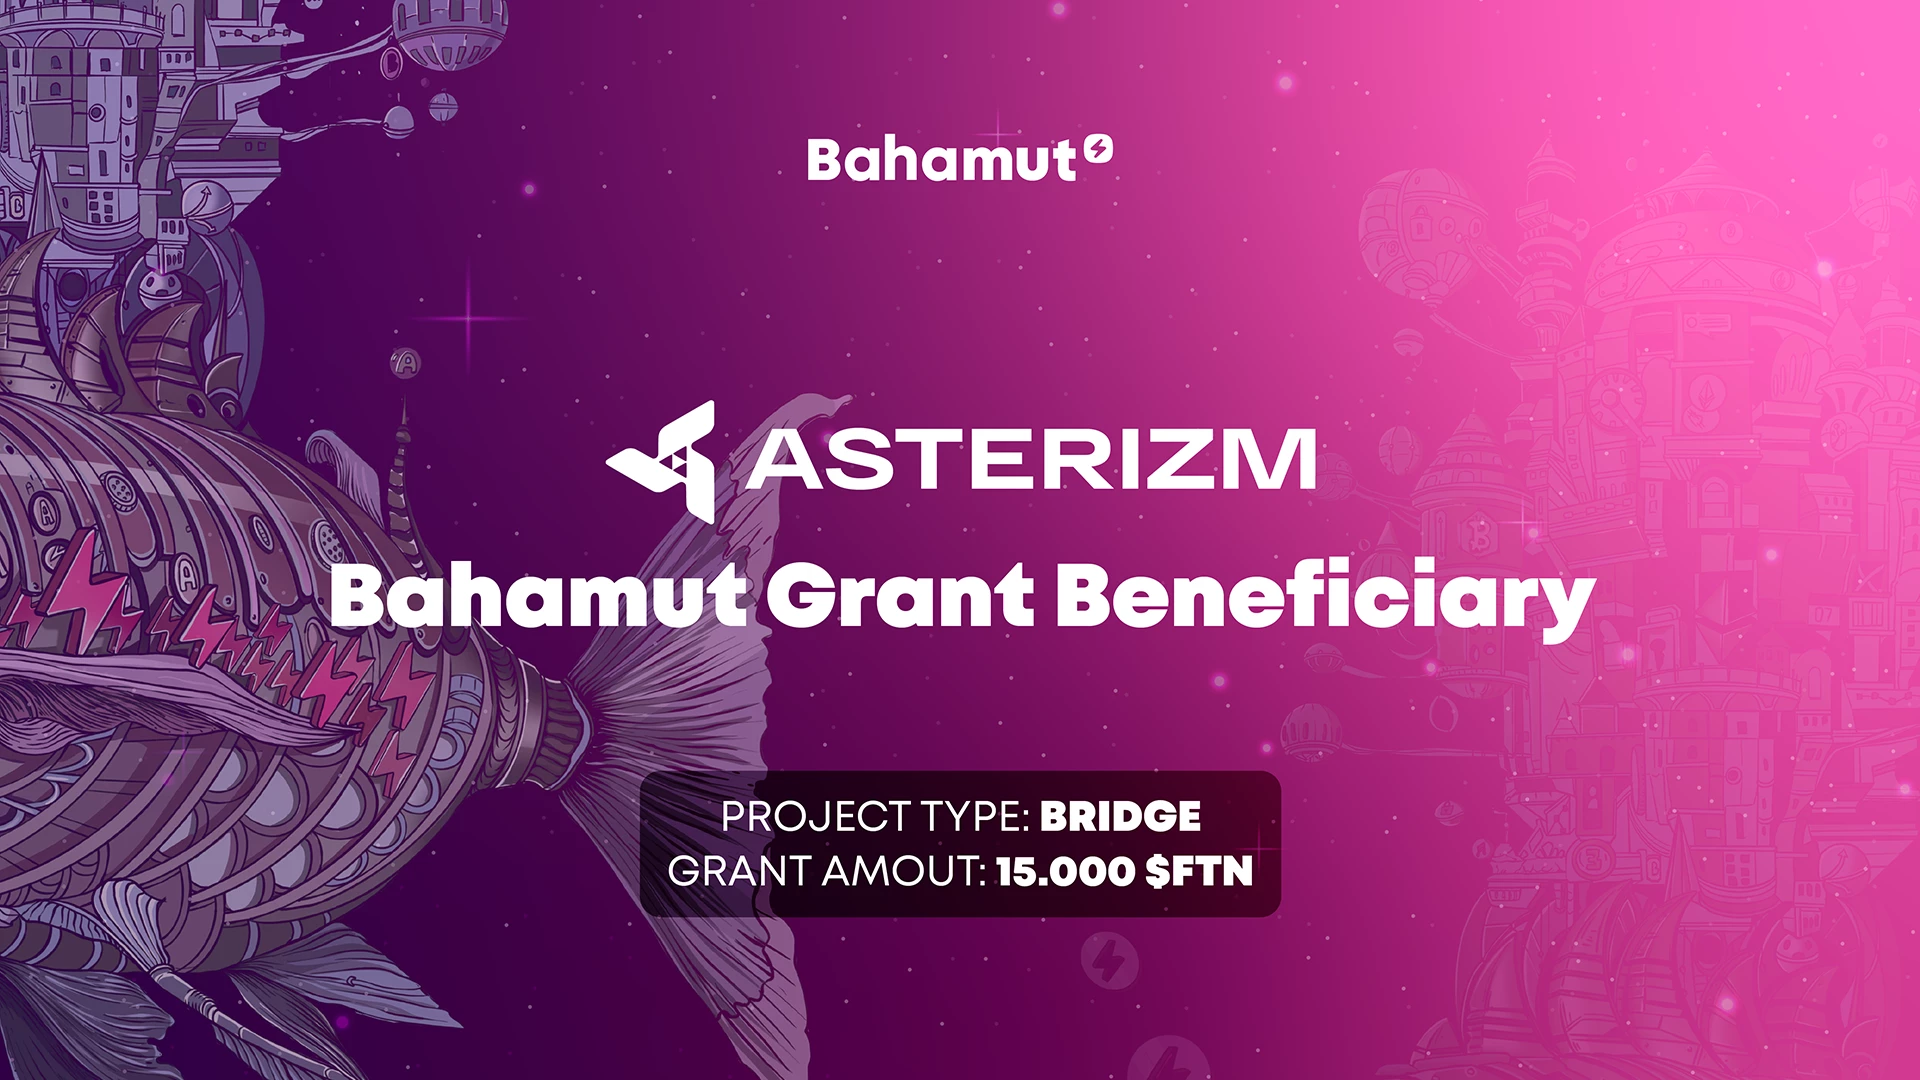 Asterizm se tornou um dos beneficiários do Programa de Subsídios da Bahamut